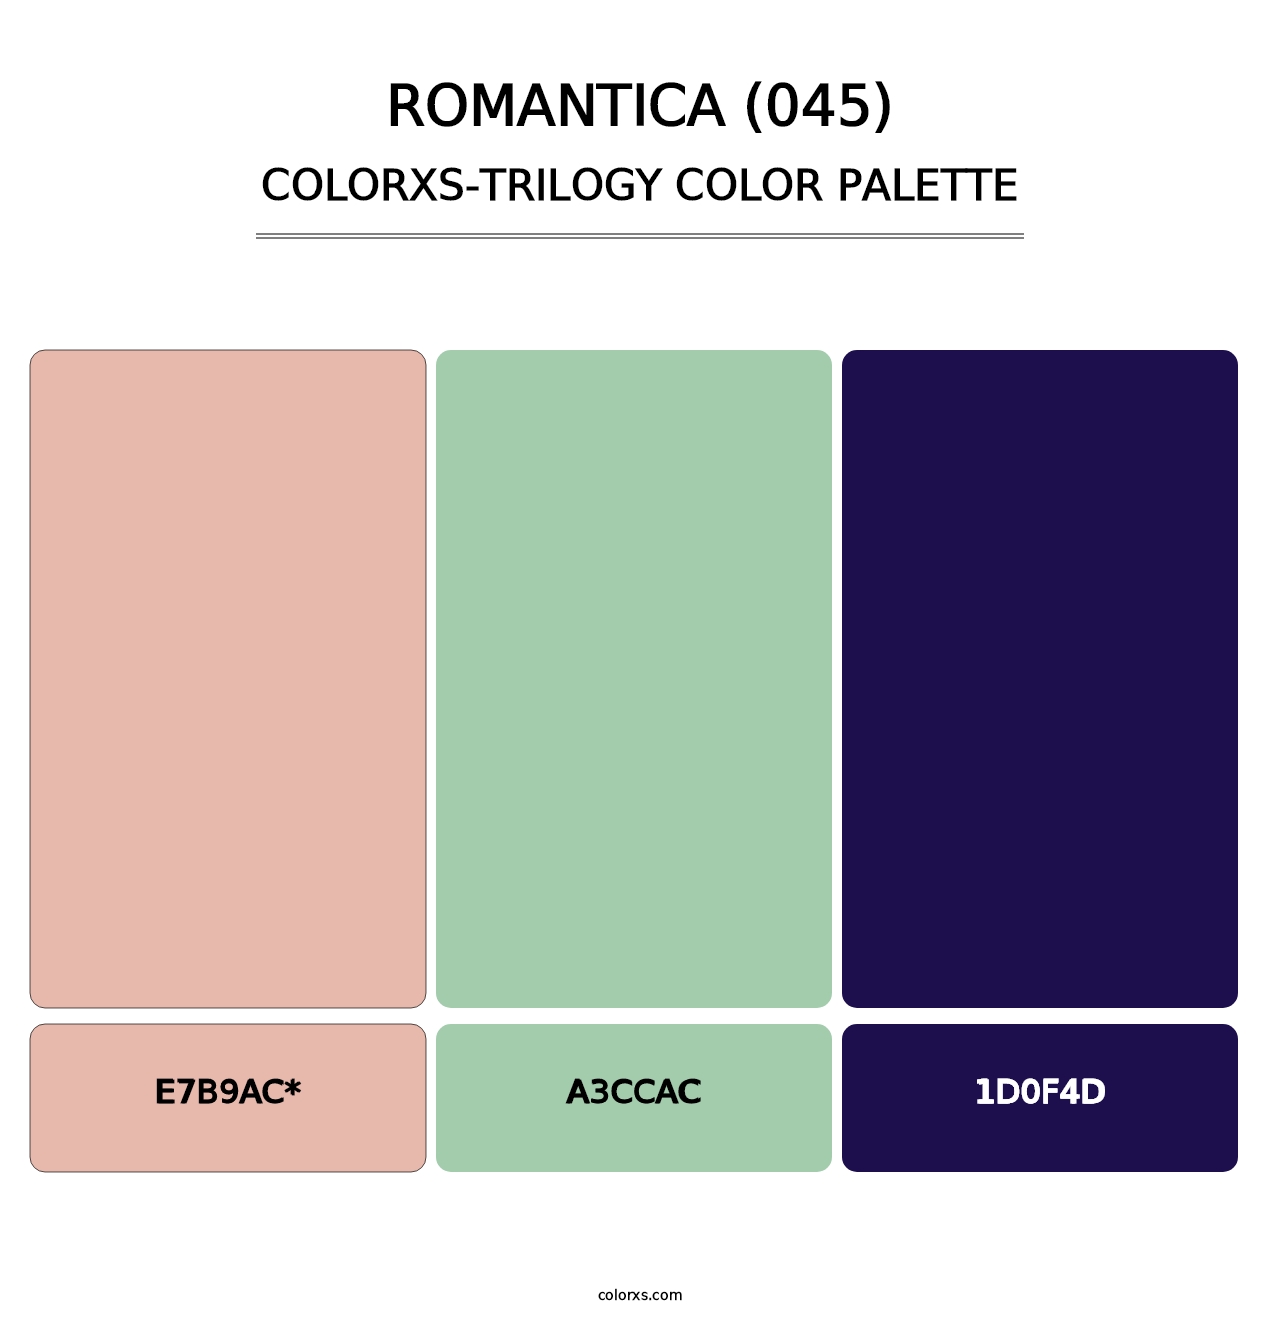 Romantica (045) - Colorxs Trilogy Palette